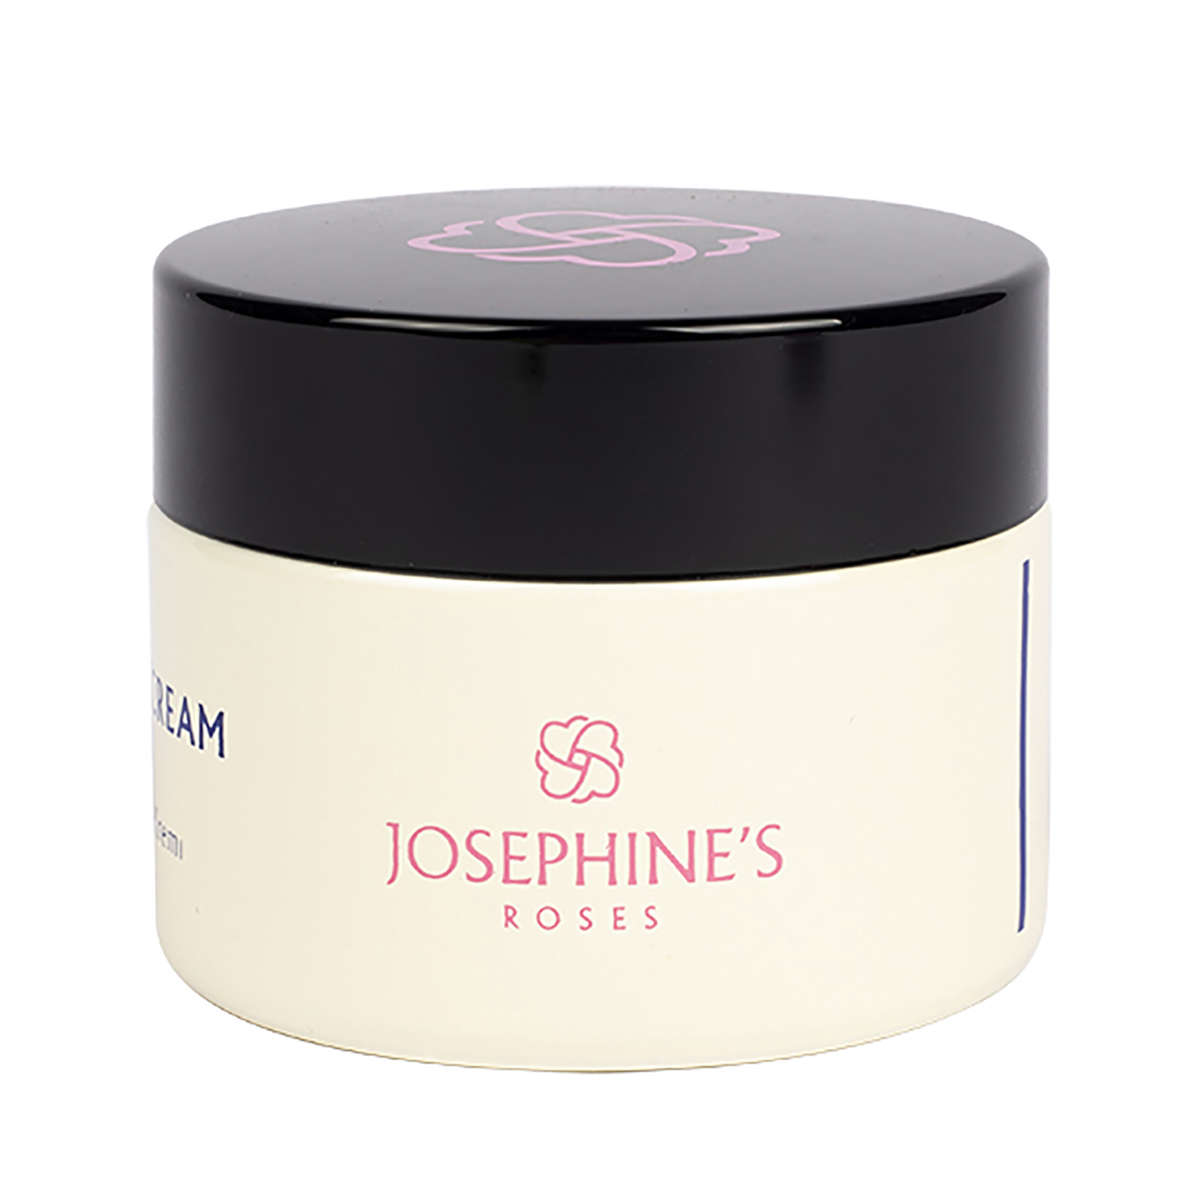 Josephine’s roses spf 15 day cream